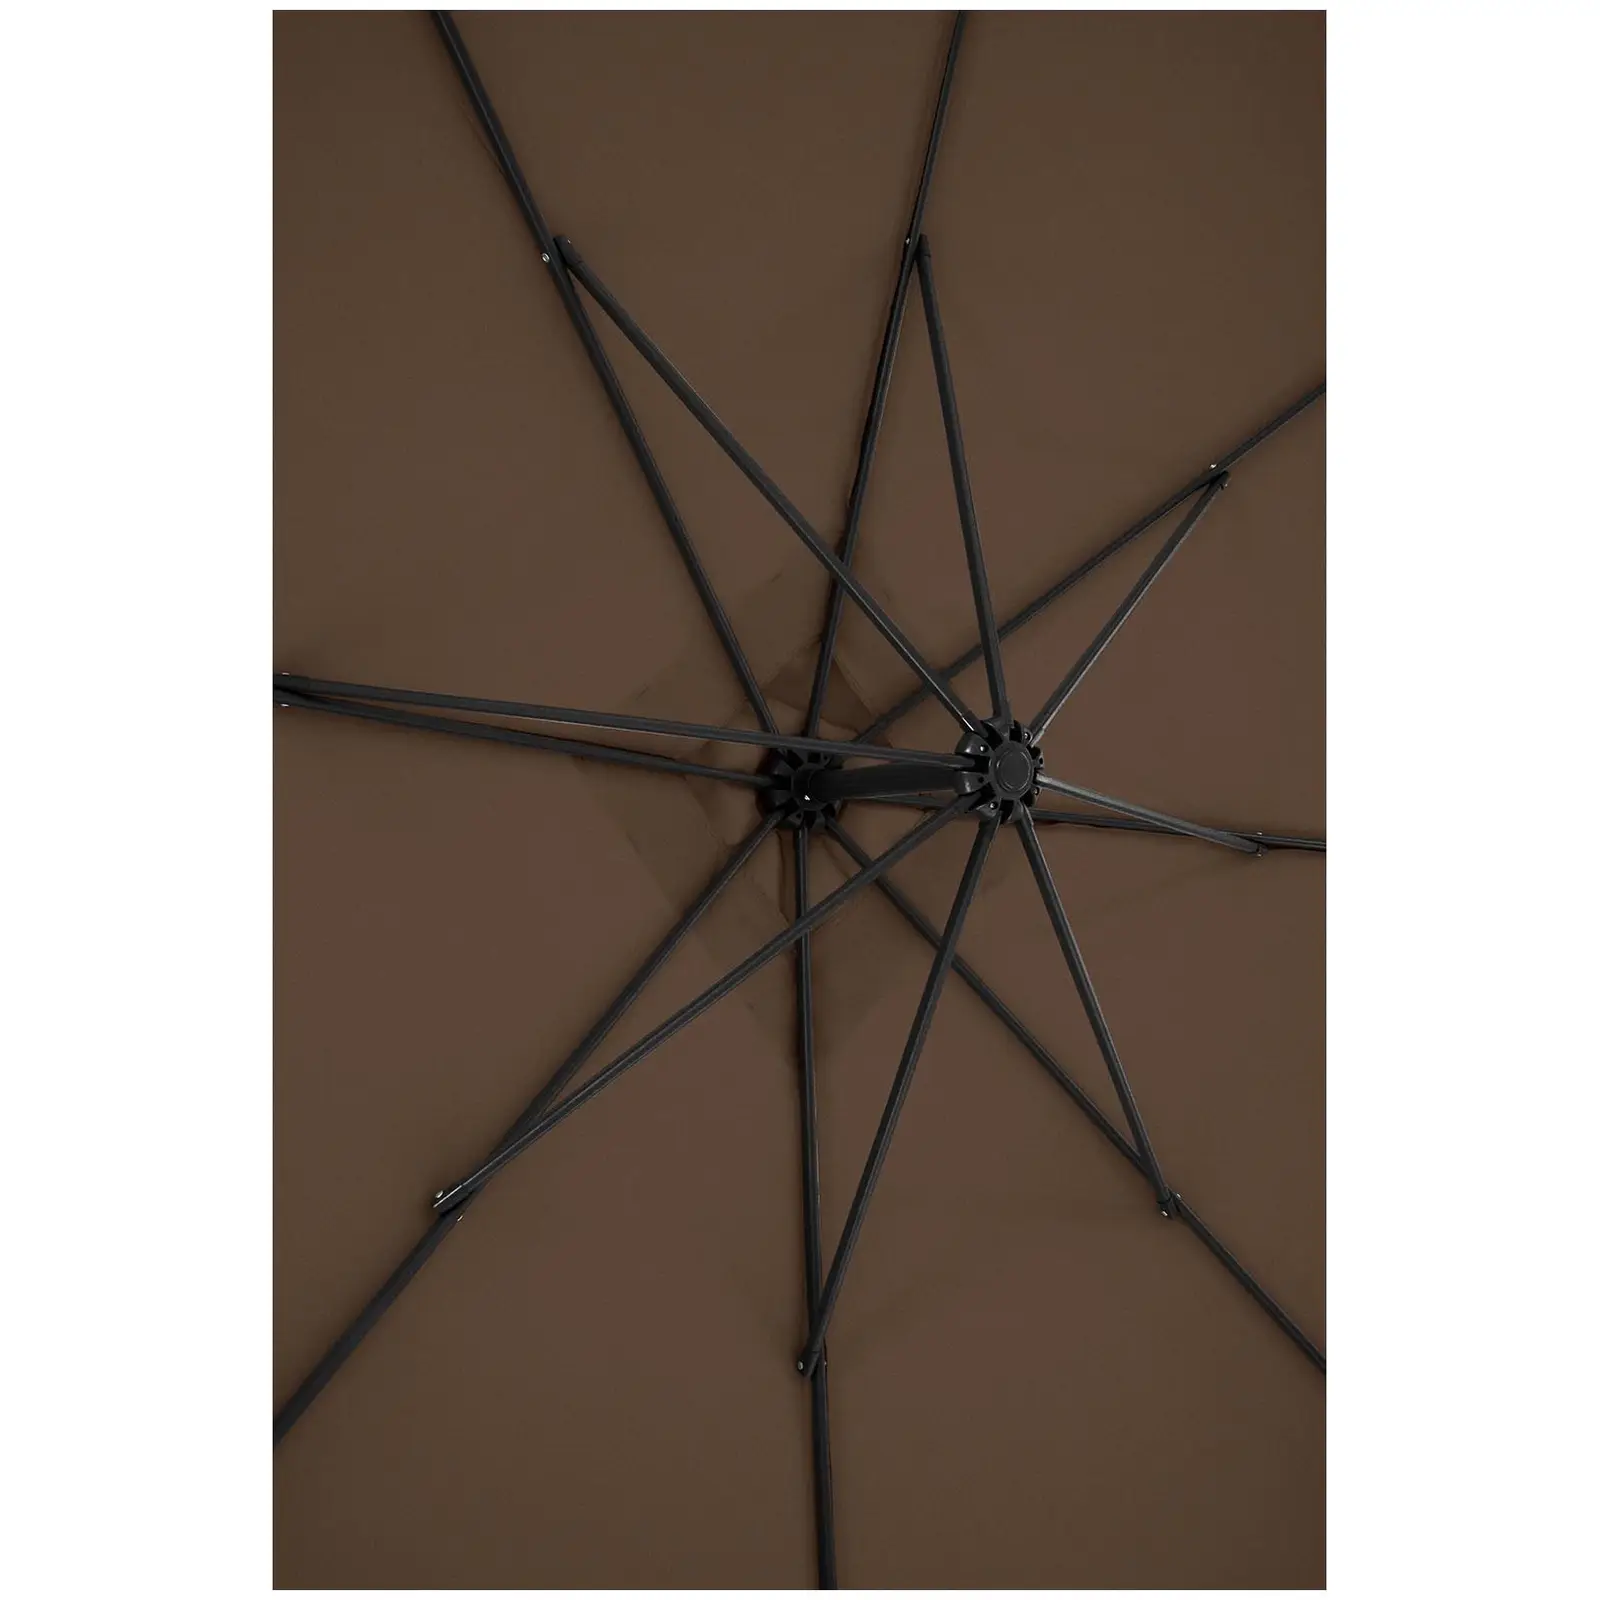 Ampelschirm - Brown - viereckig - 250 x 250 cm - neigbar